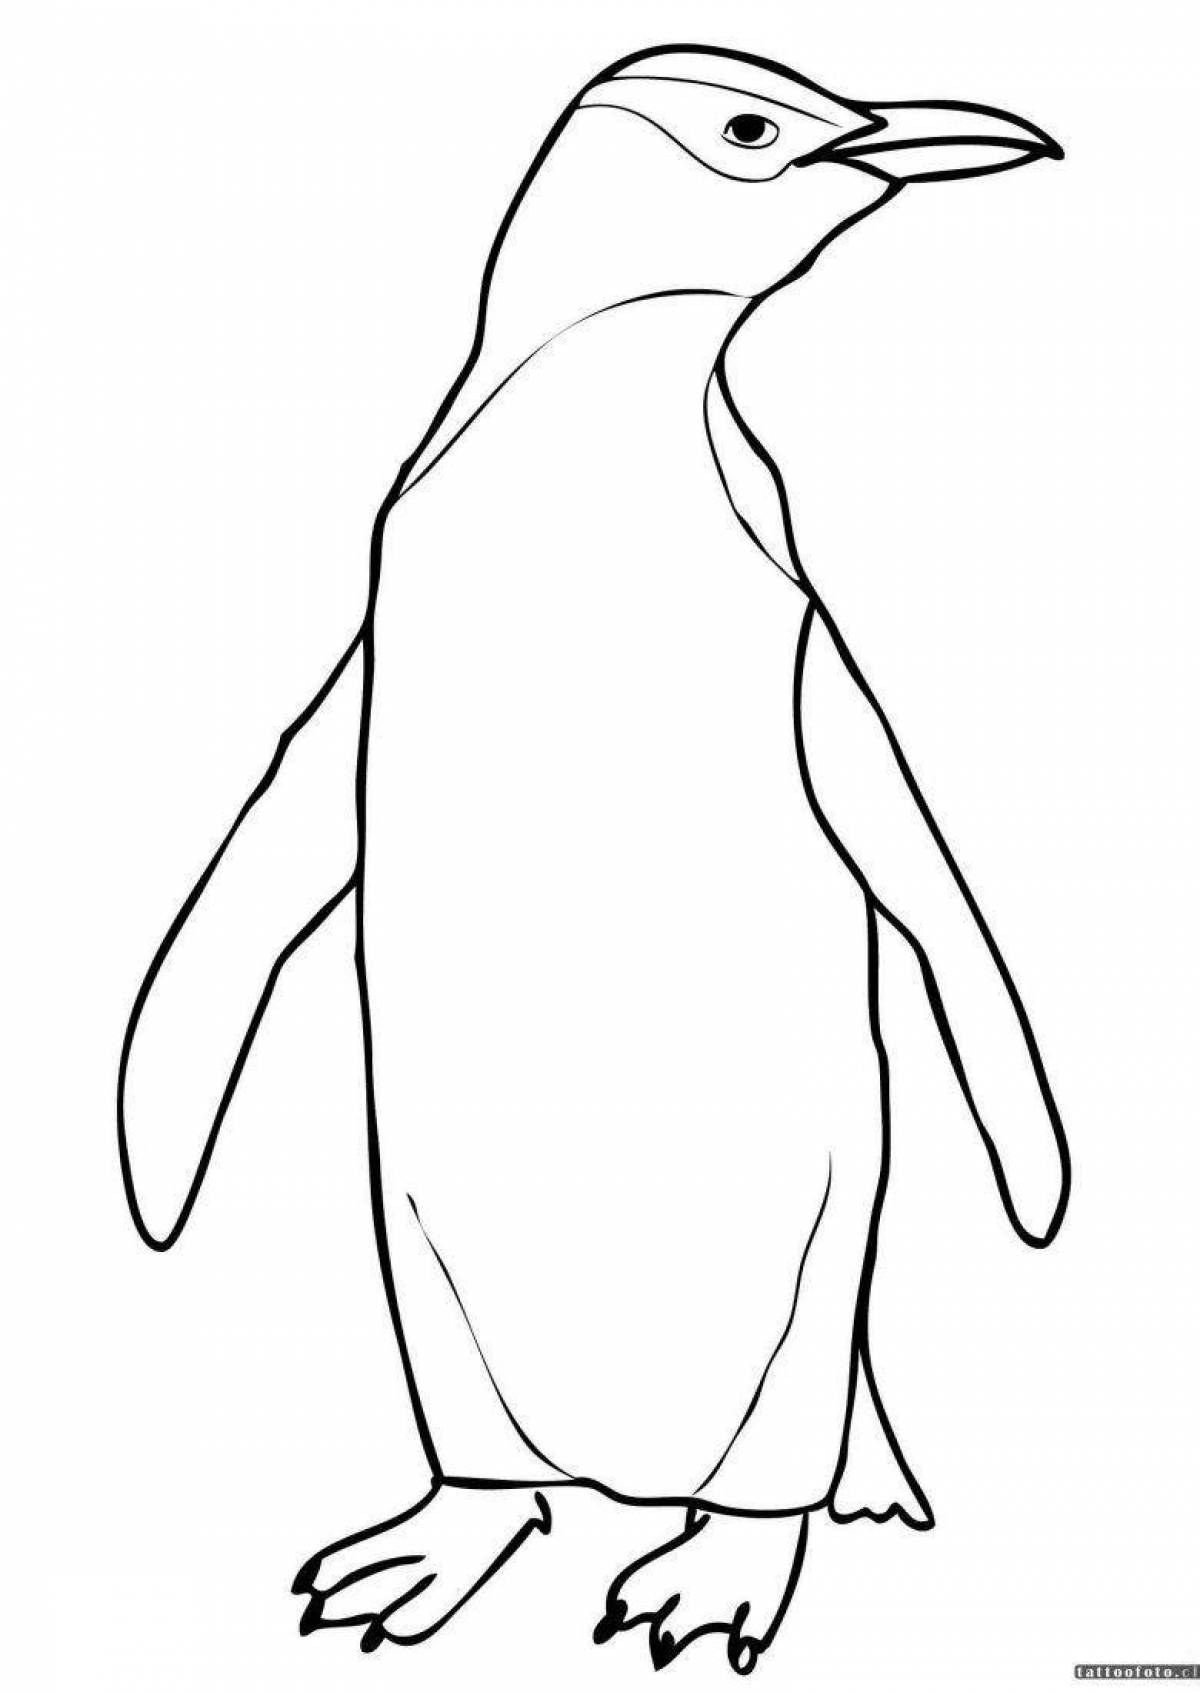 Юмористическая раскраска пингвинов